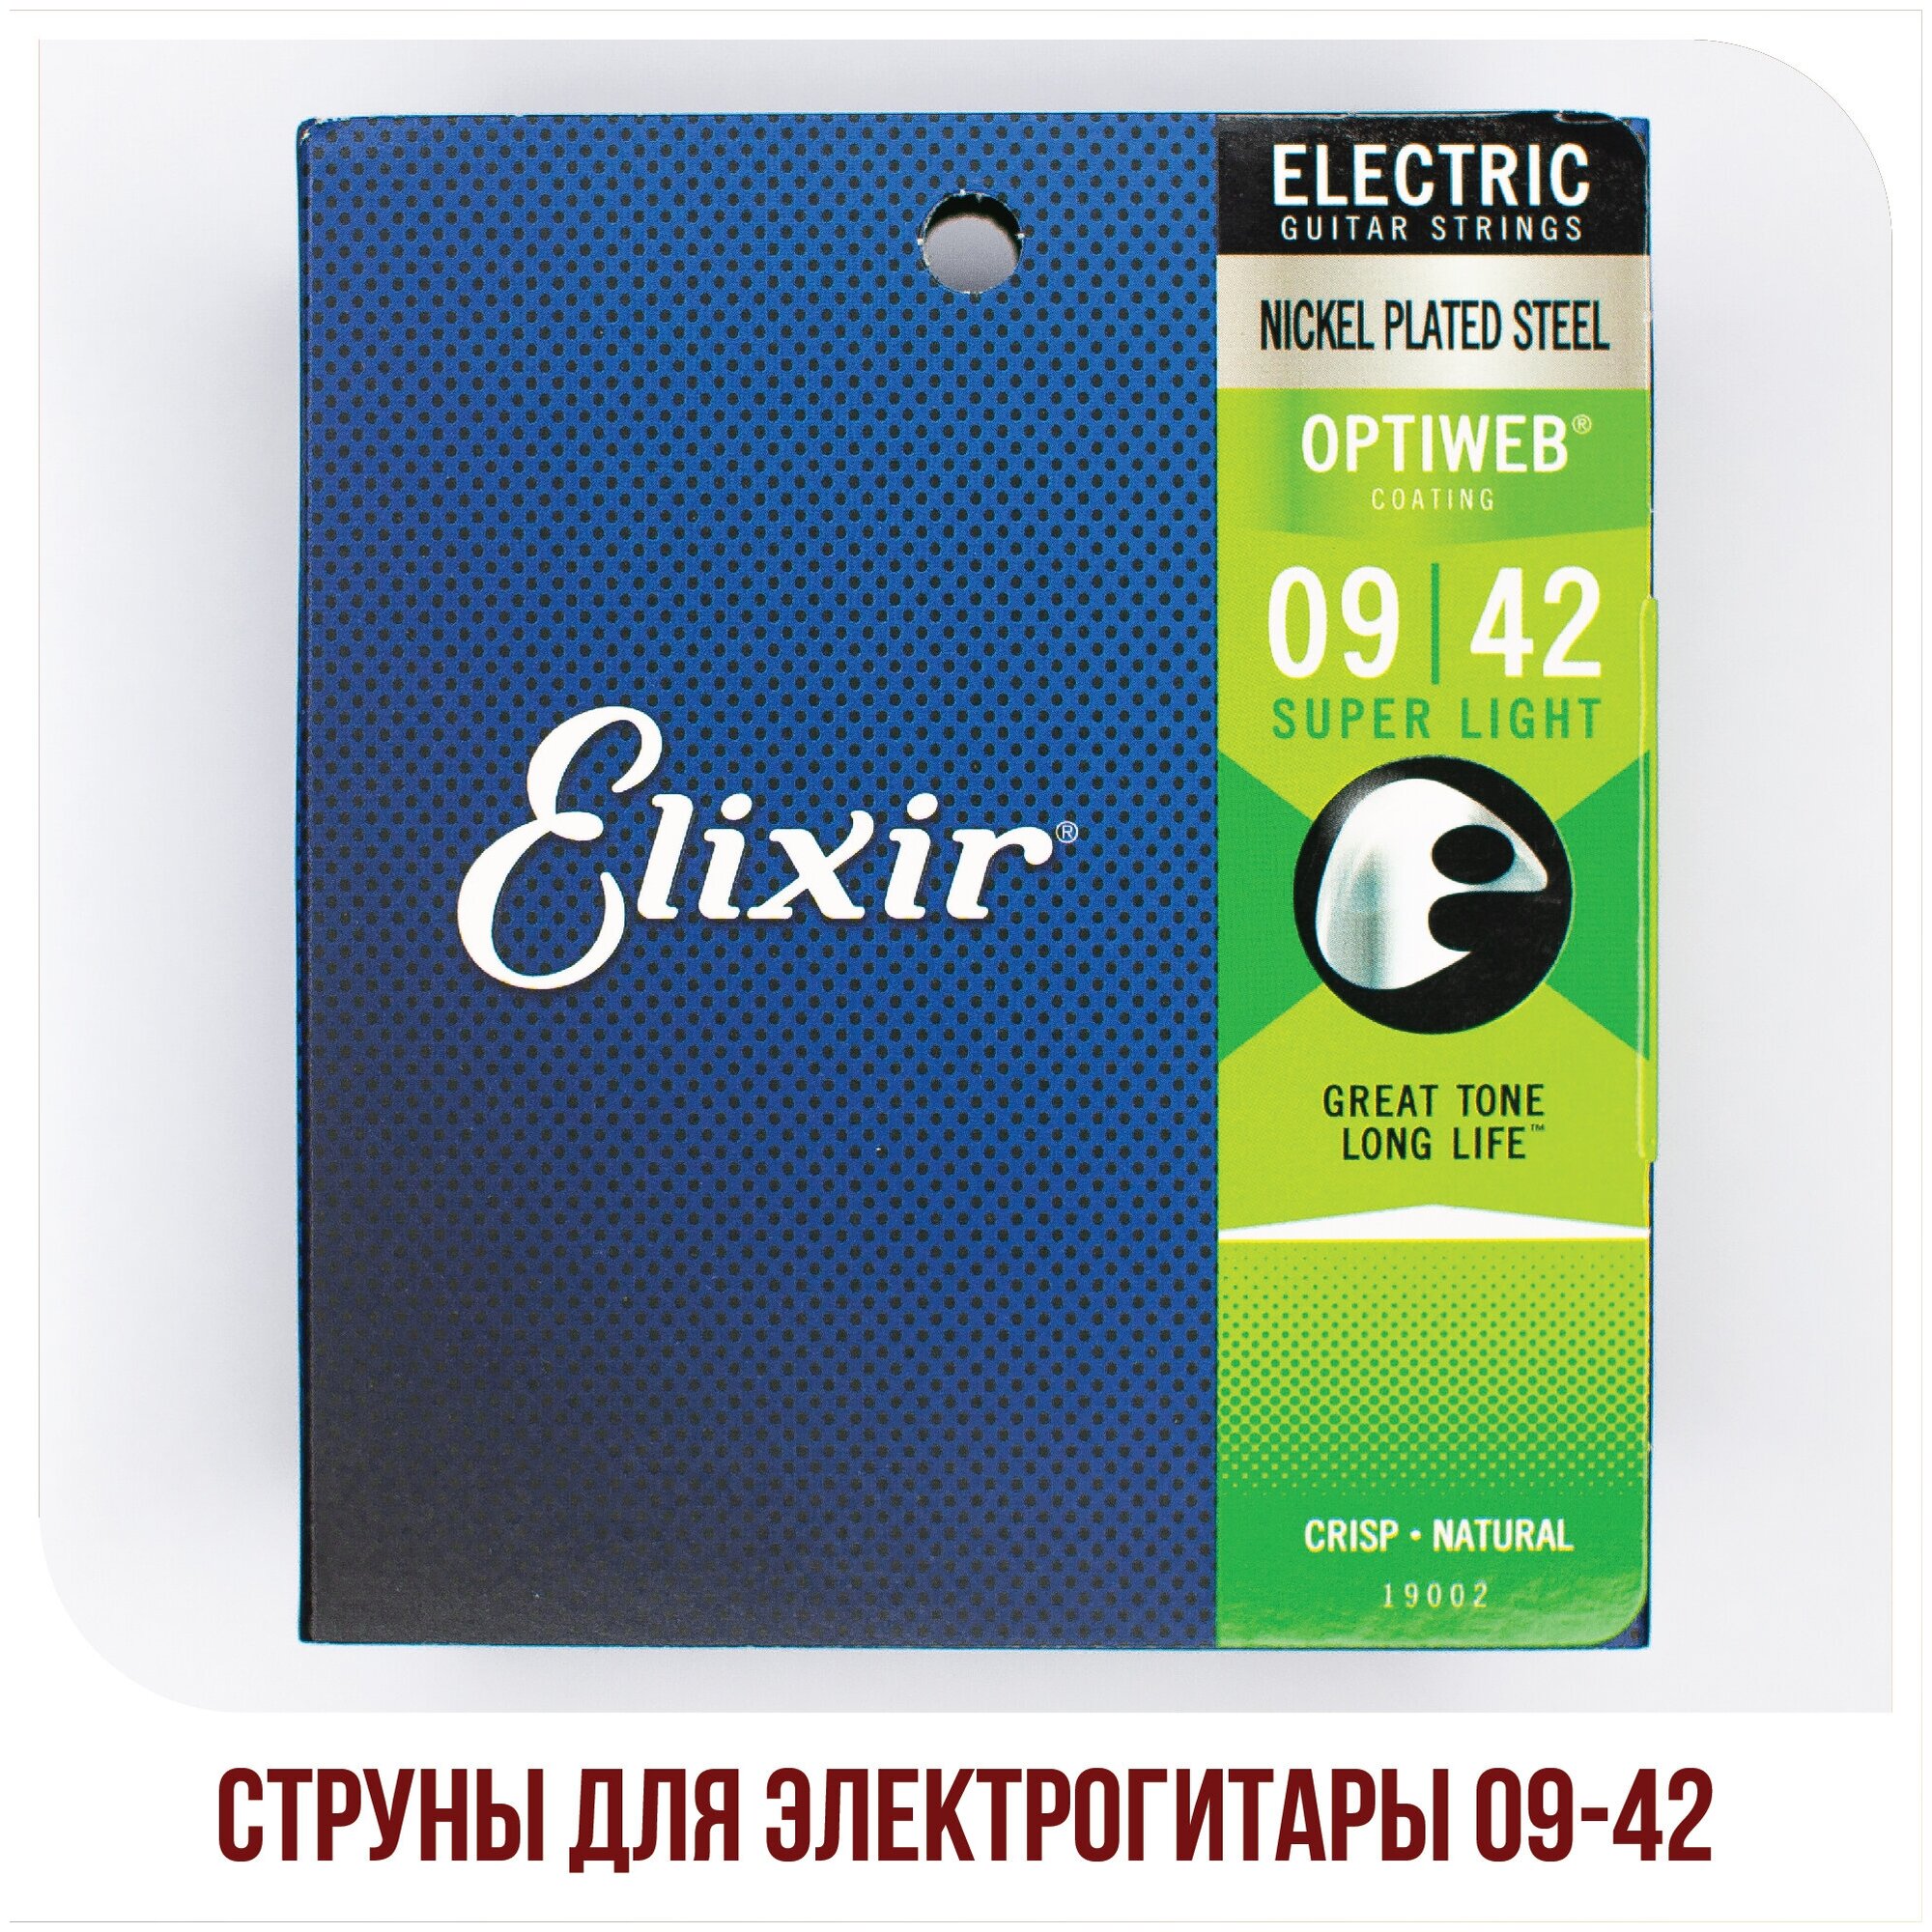 Струны для электрогитары Elixir 19002 Optiweb Super Light 09-42